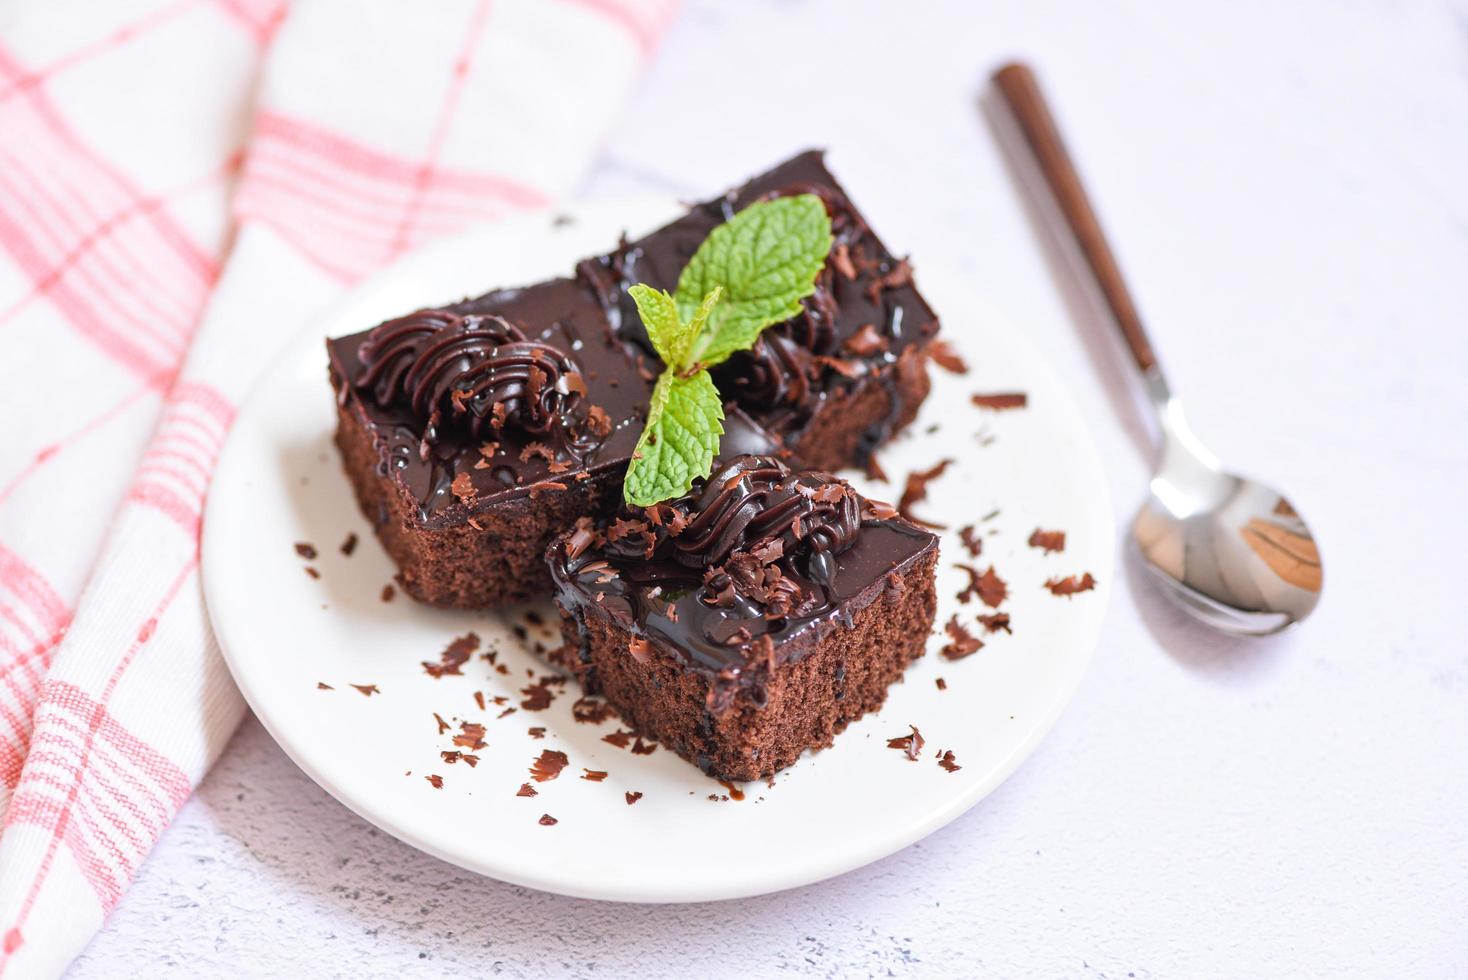 Kuchen Schokolade leckeres Dessert auf dem Tisch serviert - Kuchenstück auf weißem Teller mit Topping Schokolade und Minzblatt foto